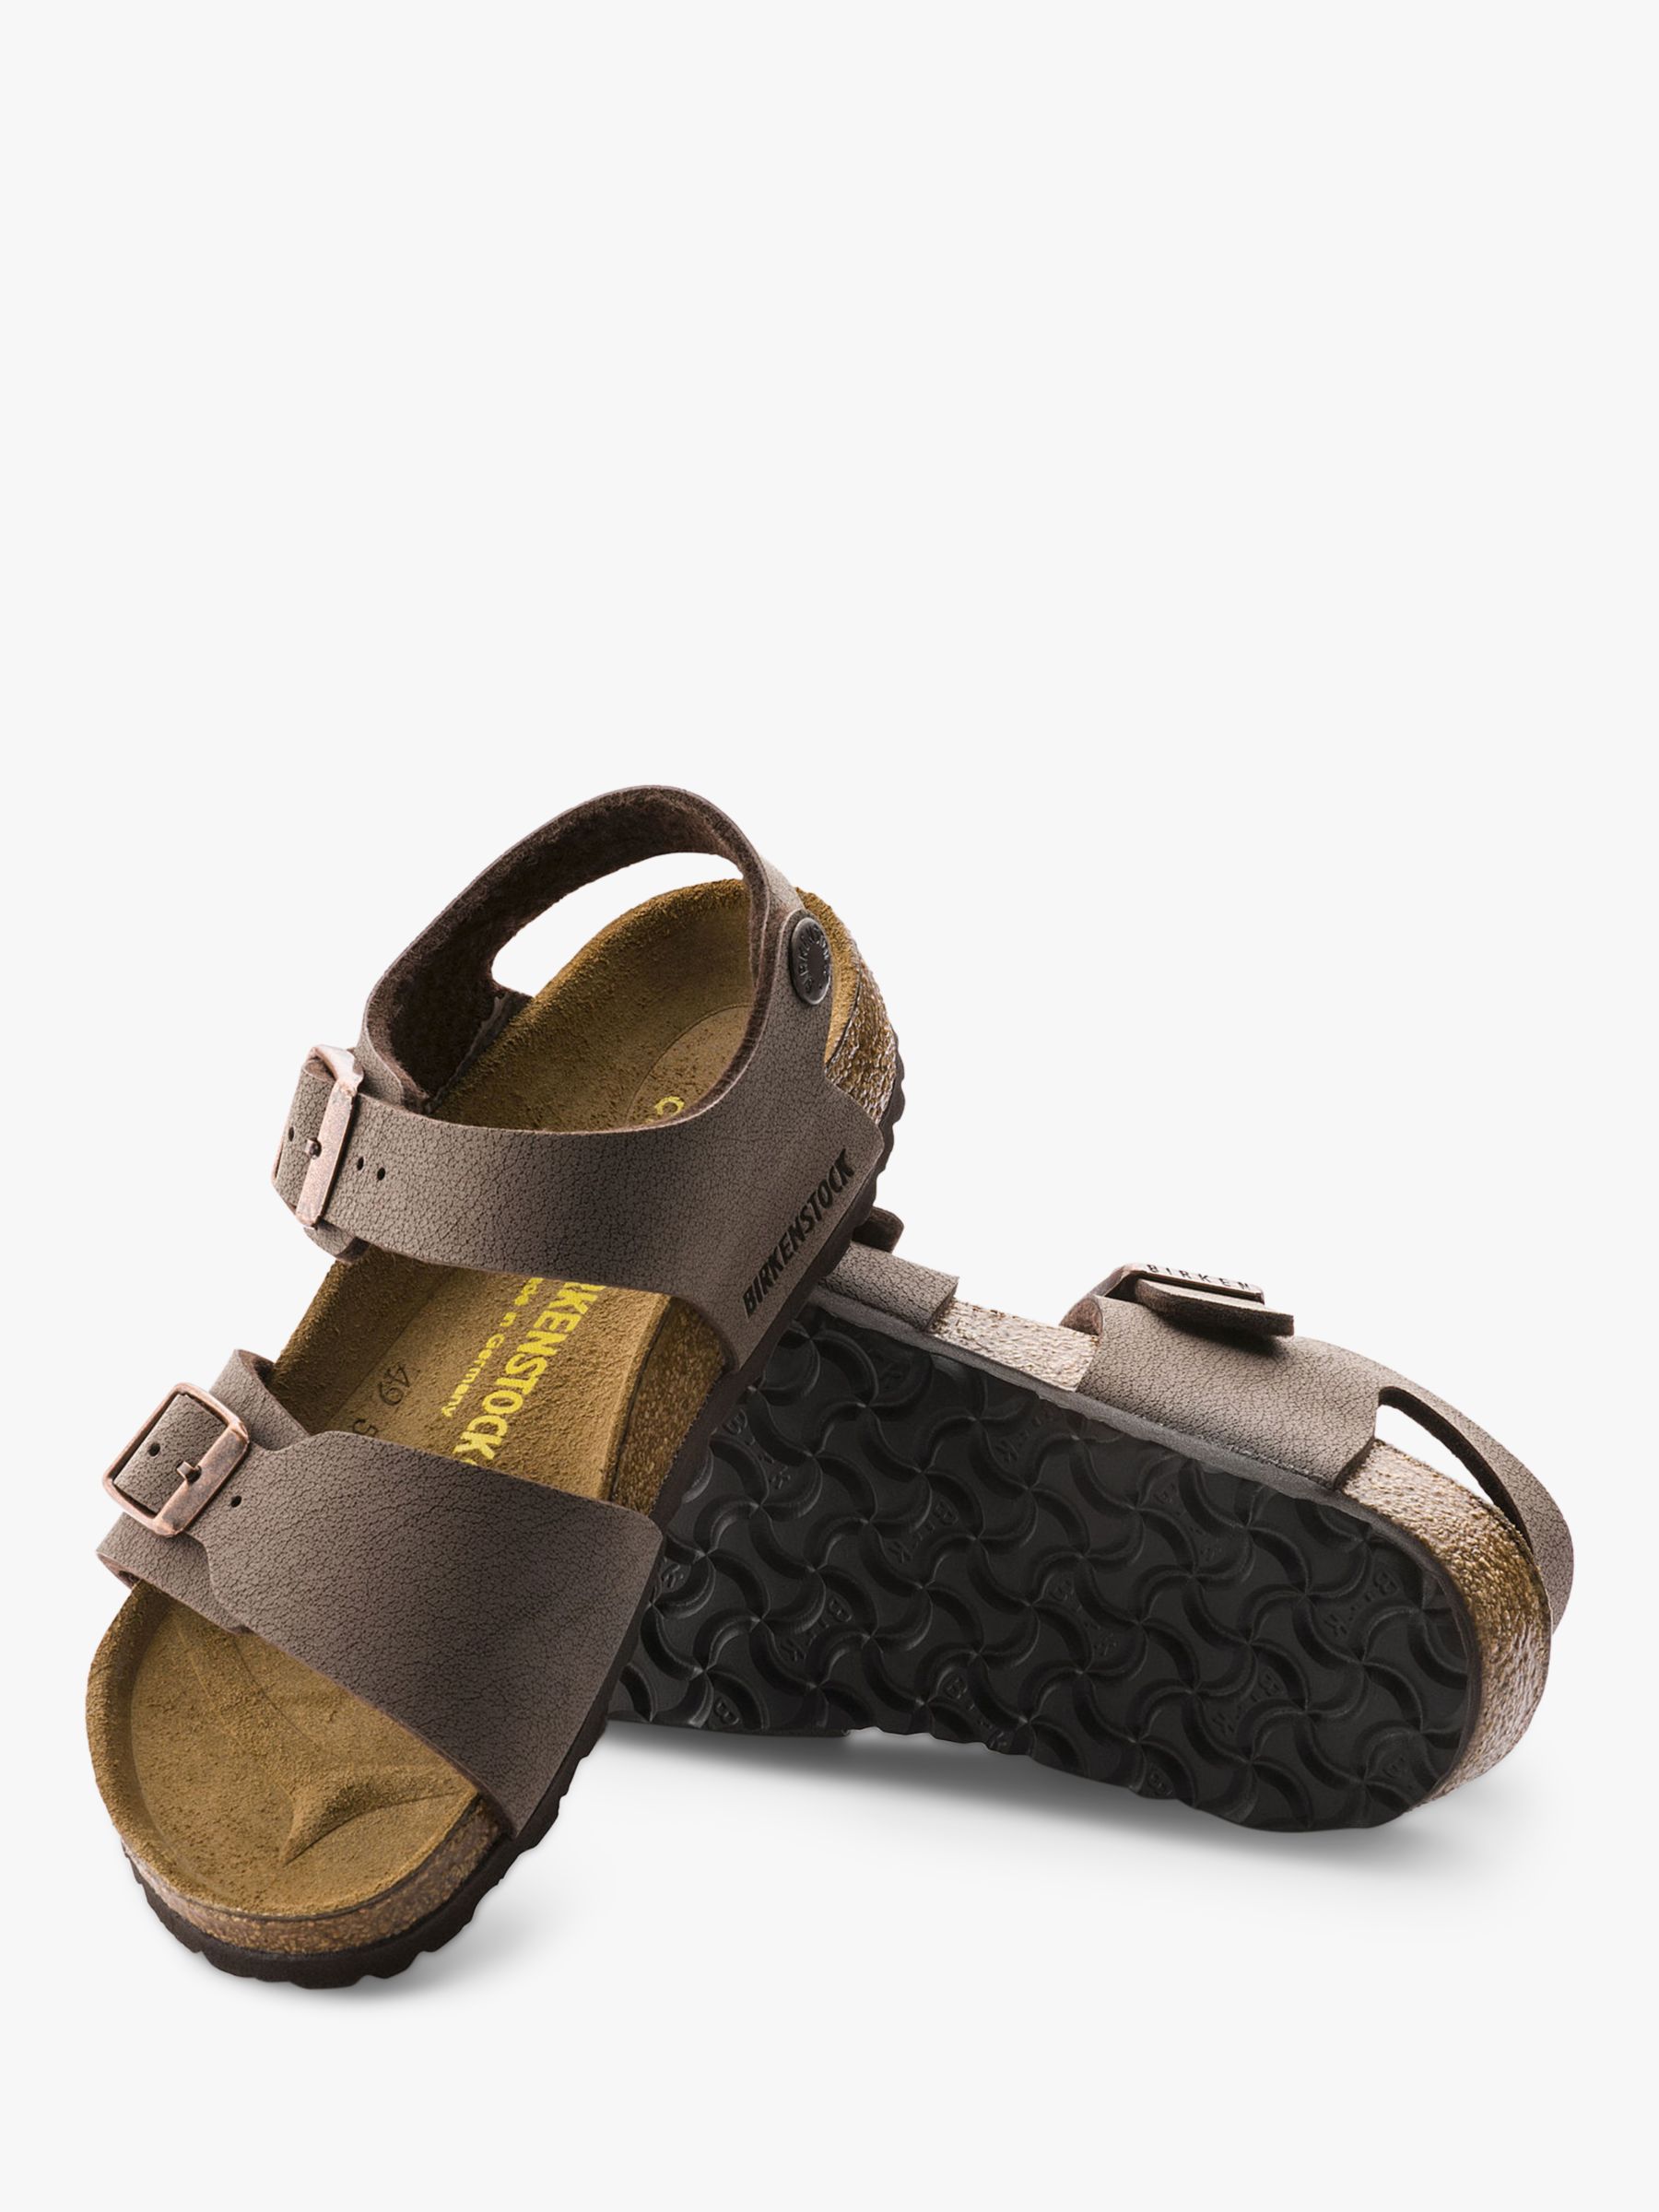 Buy Birkenstock Kids' Nubuck Sandals, Mocha Online at johnlewis.com